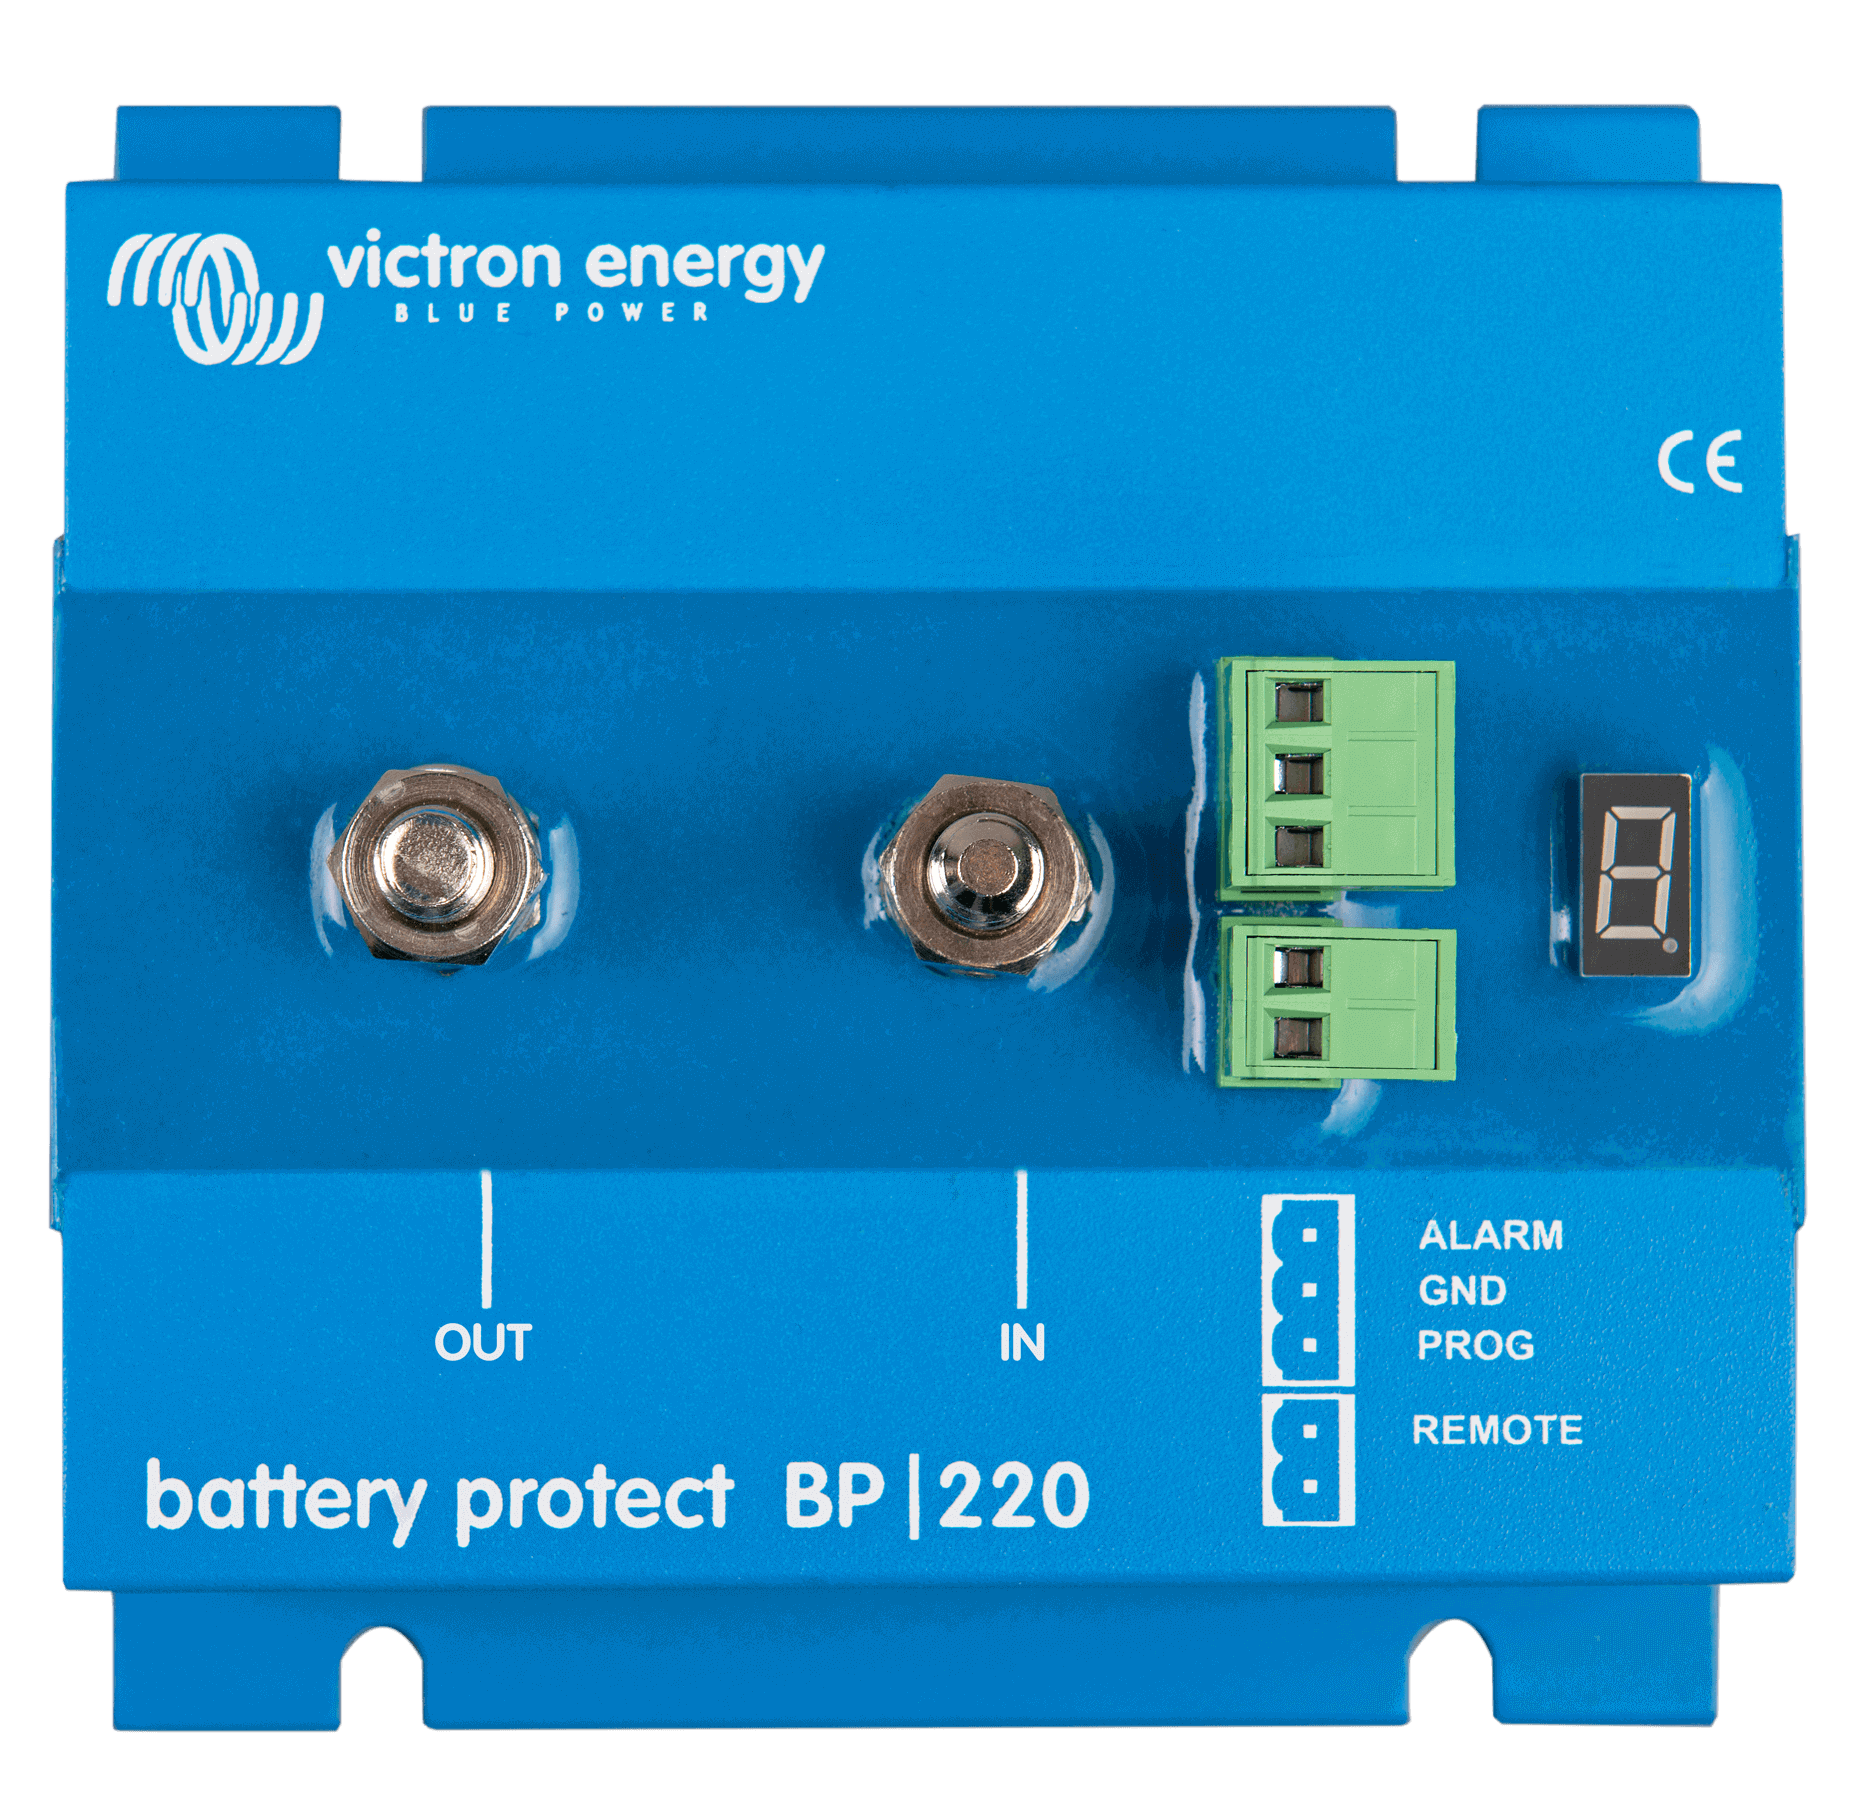 Victron BatteryProtect BP-100 12/24V 100A Batteriewächter